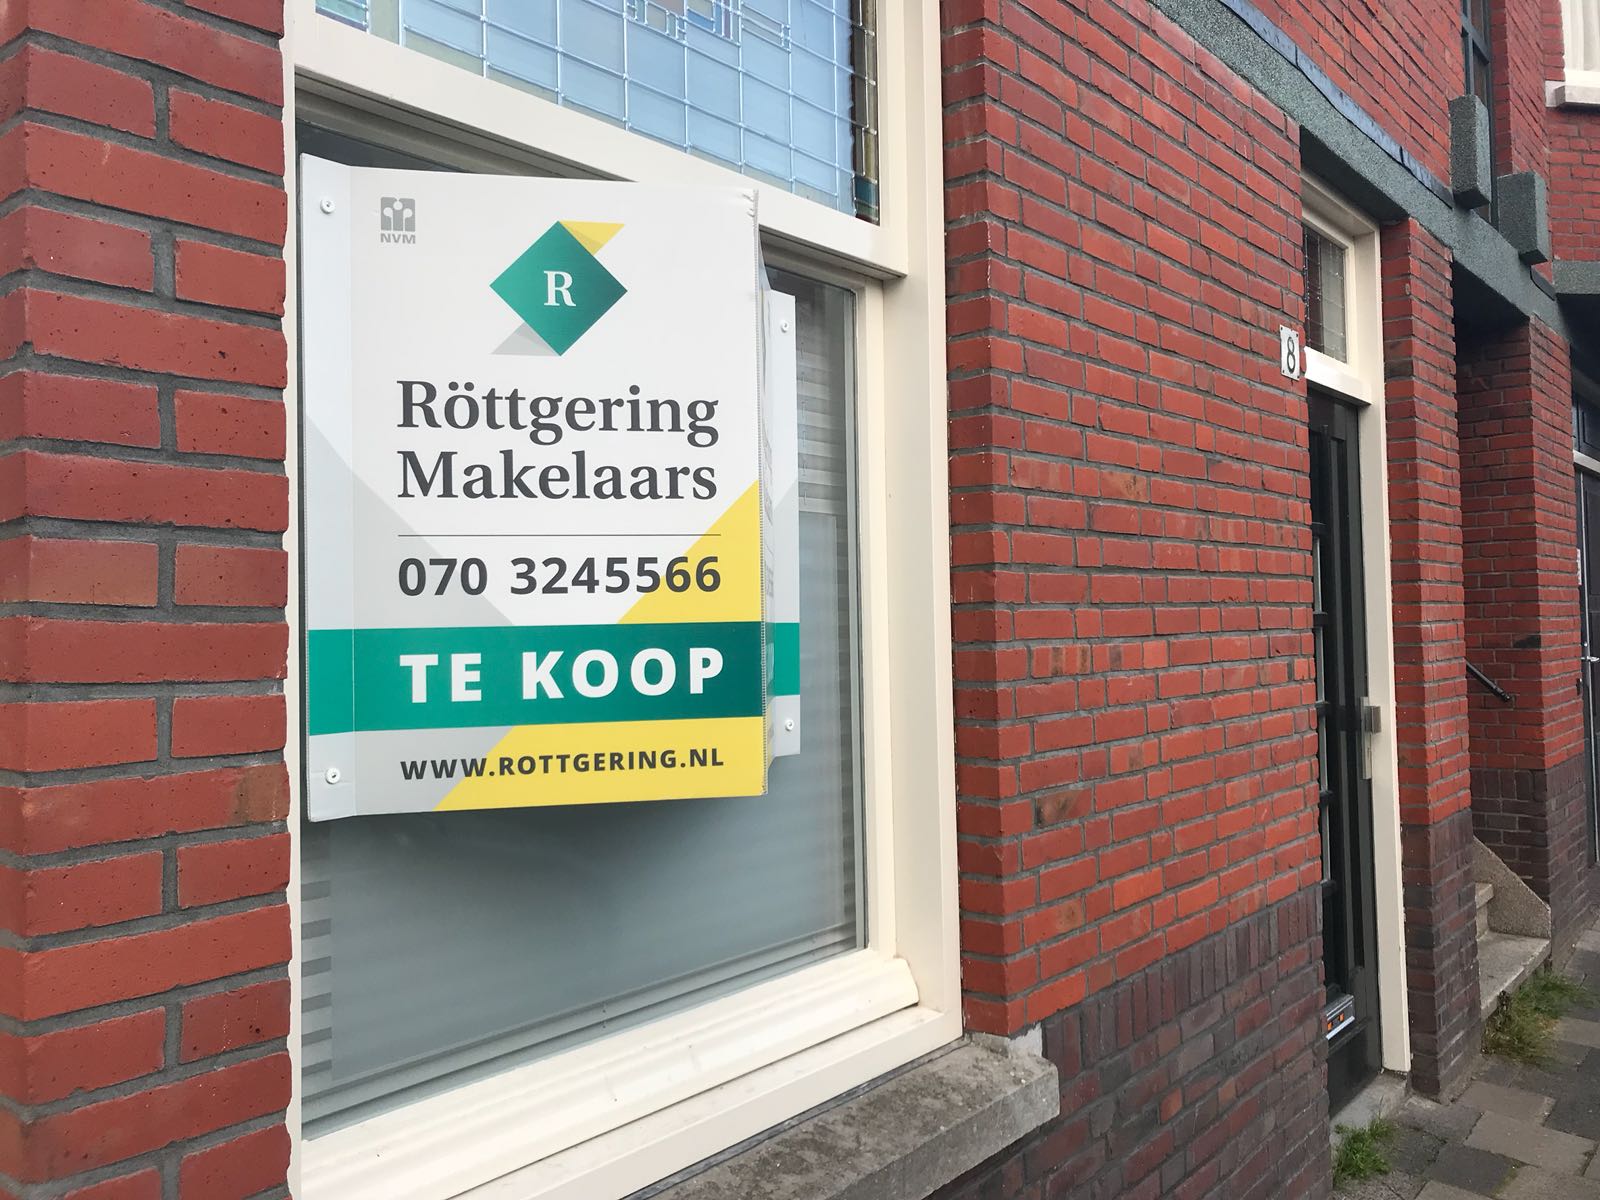 (c) Rottgering.nl